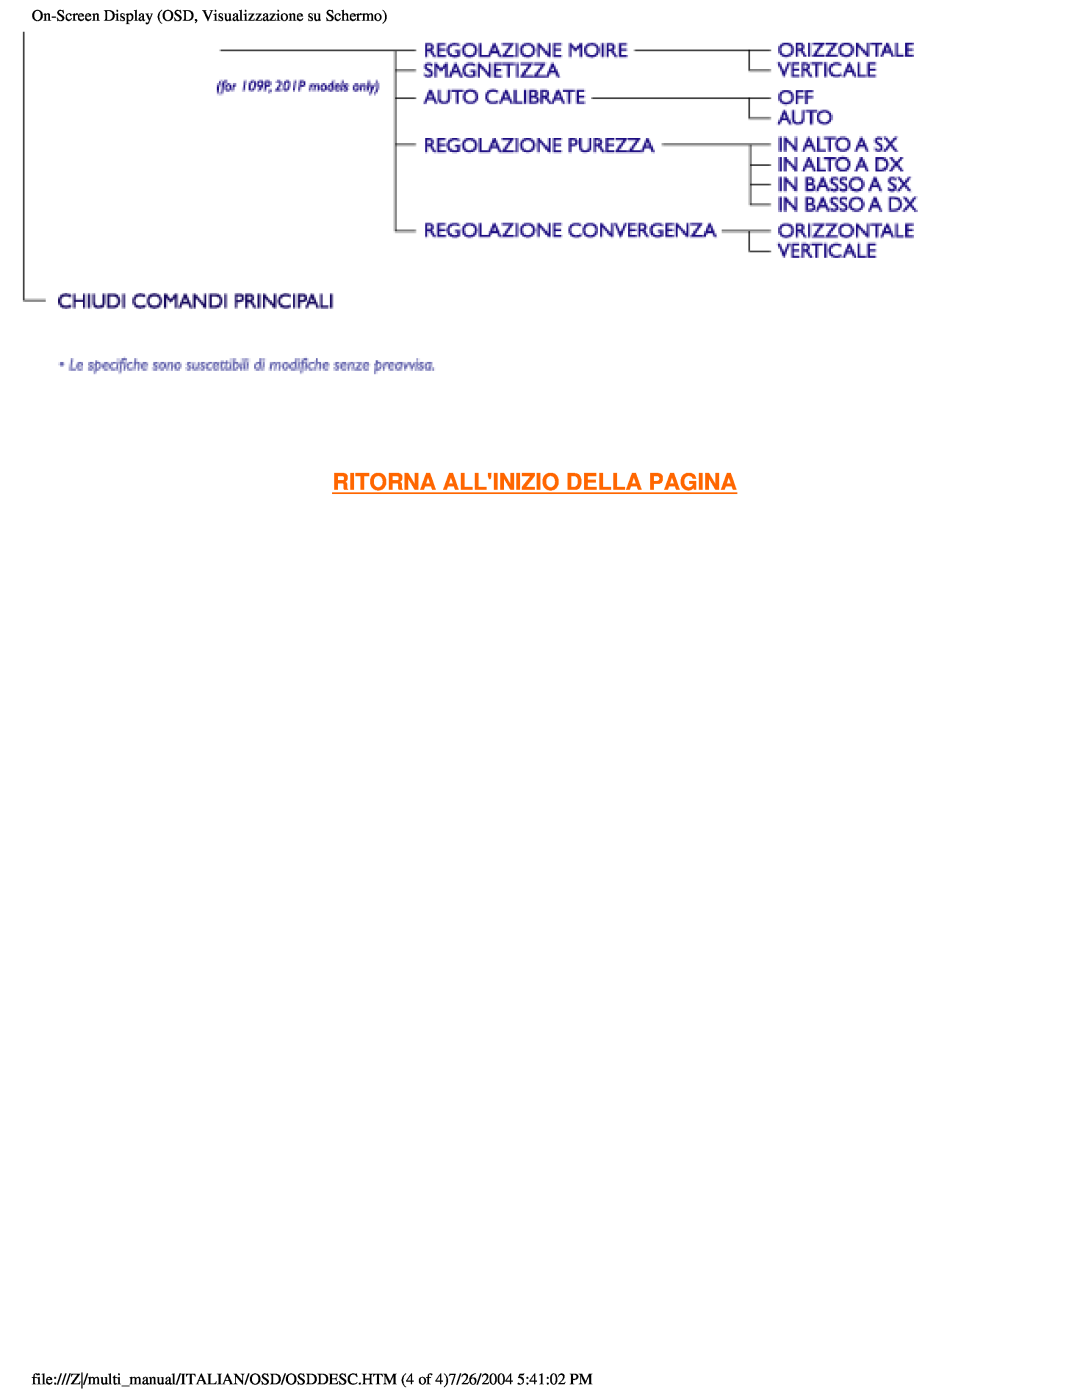 Philips 201B user manual Ritorna Allinizio Della Pagina, On-ScreenDisplay OSD, Visualizzazione su Schermo 